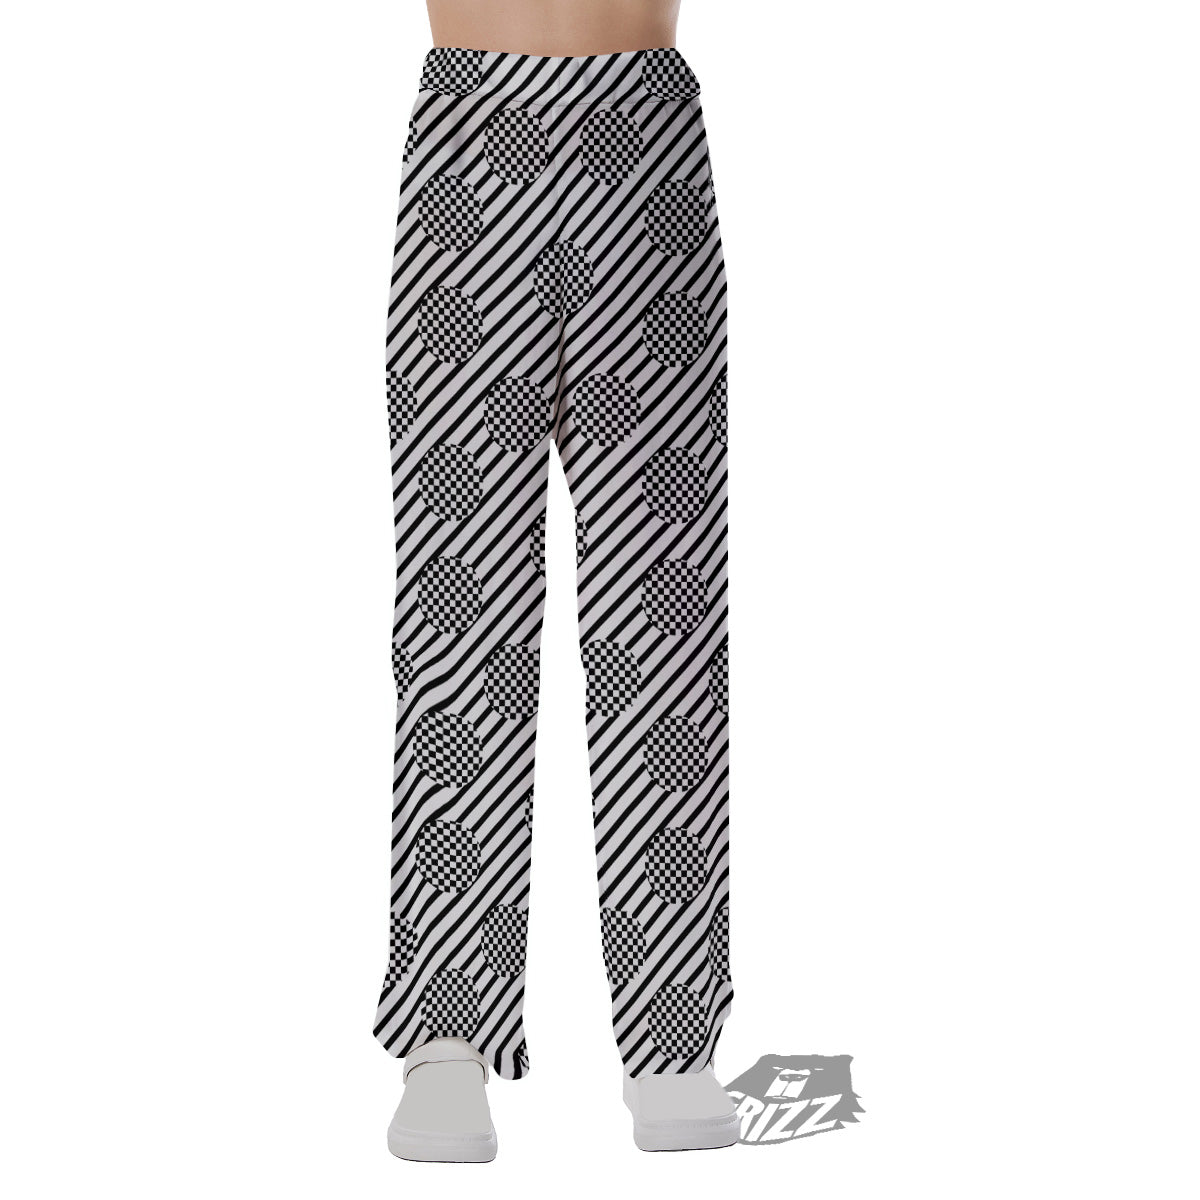 Stripes And Checkered Polka Dots Print Pattern Pajama Pants